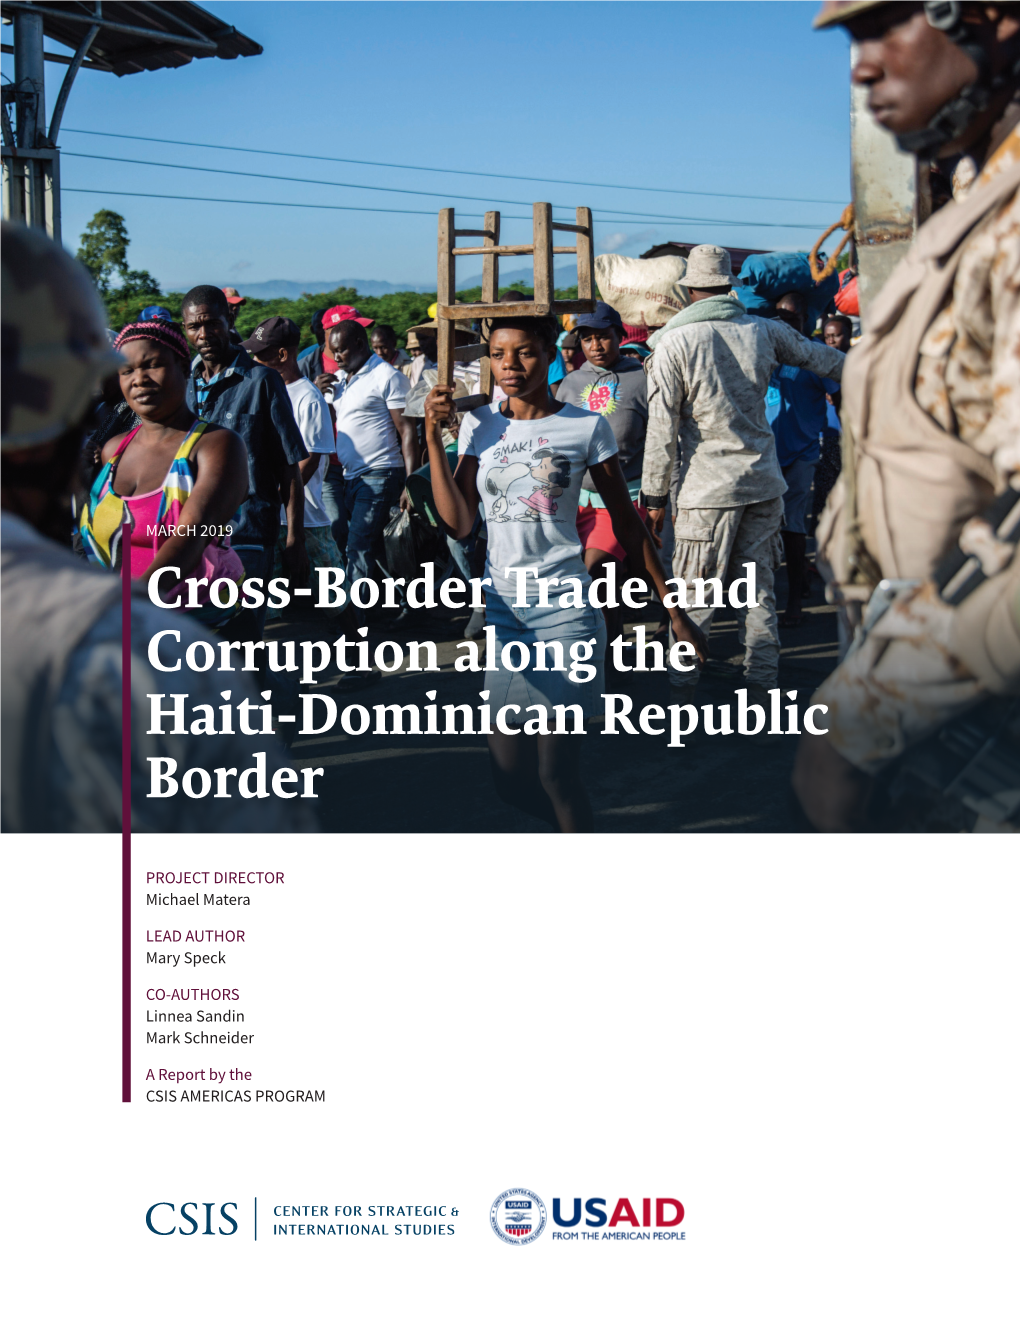 Cross-Border Trade and Corruption Along the Haiti-Dominican Republic Border